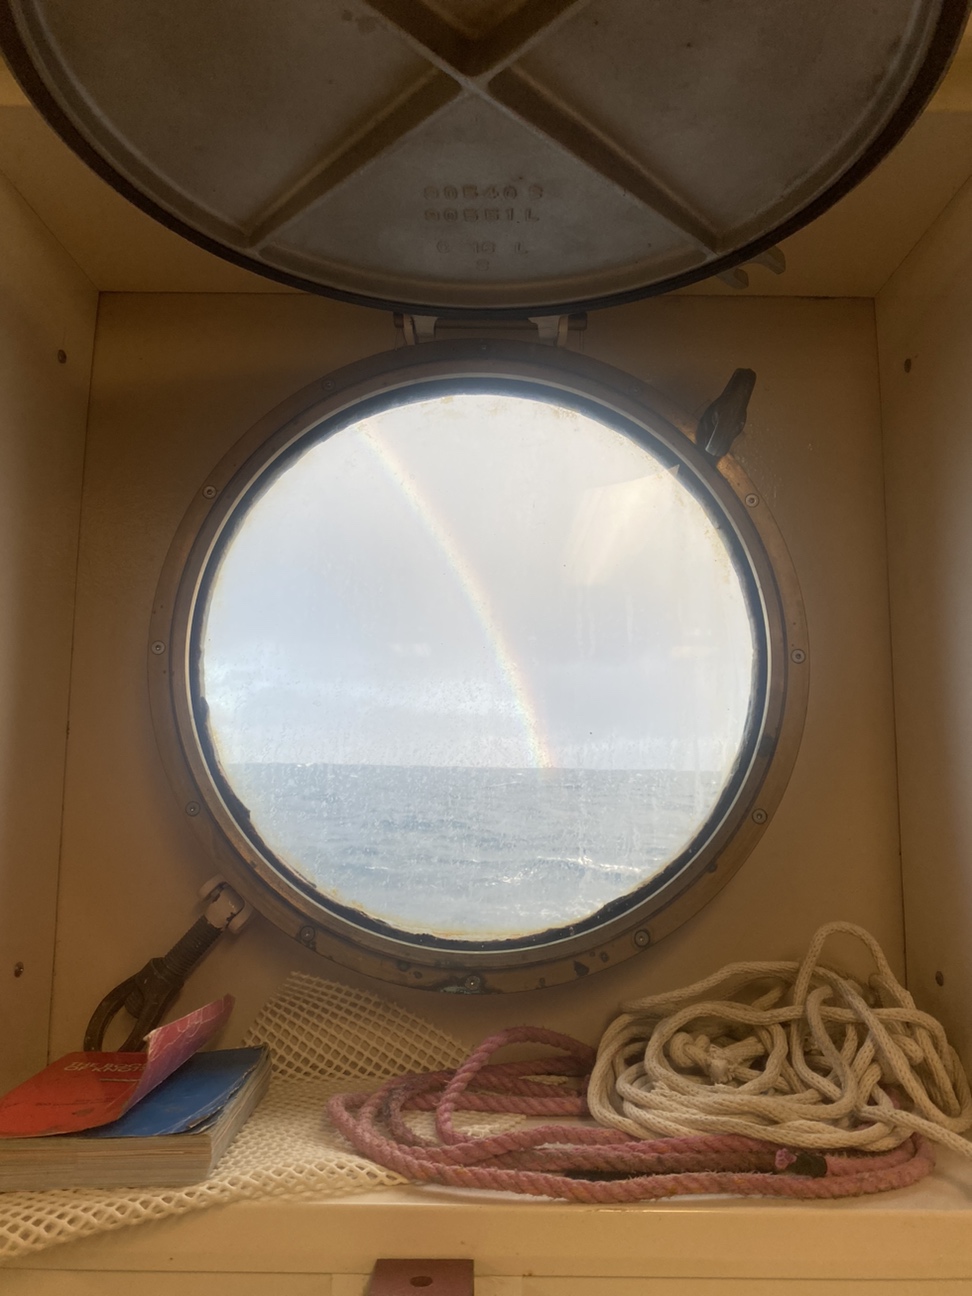 Rainbow through a porthole on the ship.